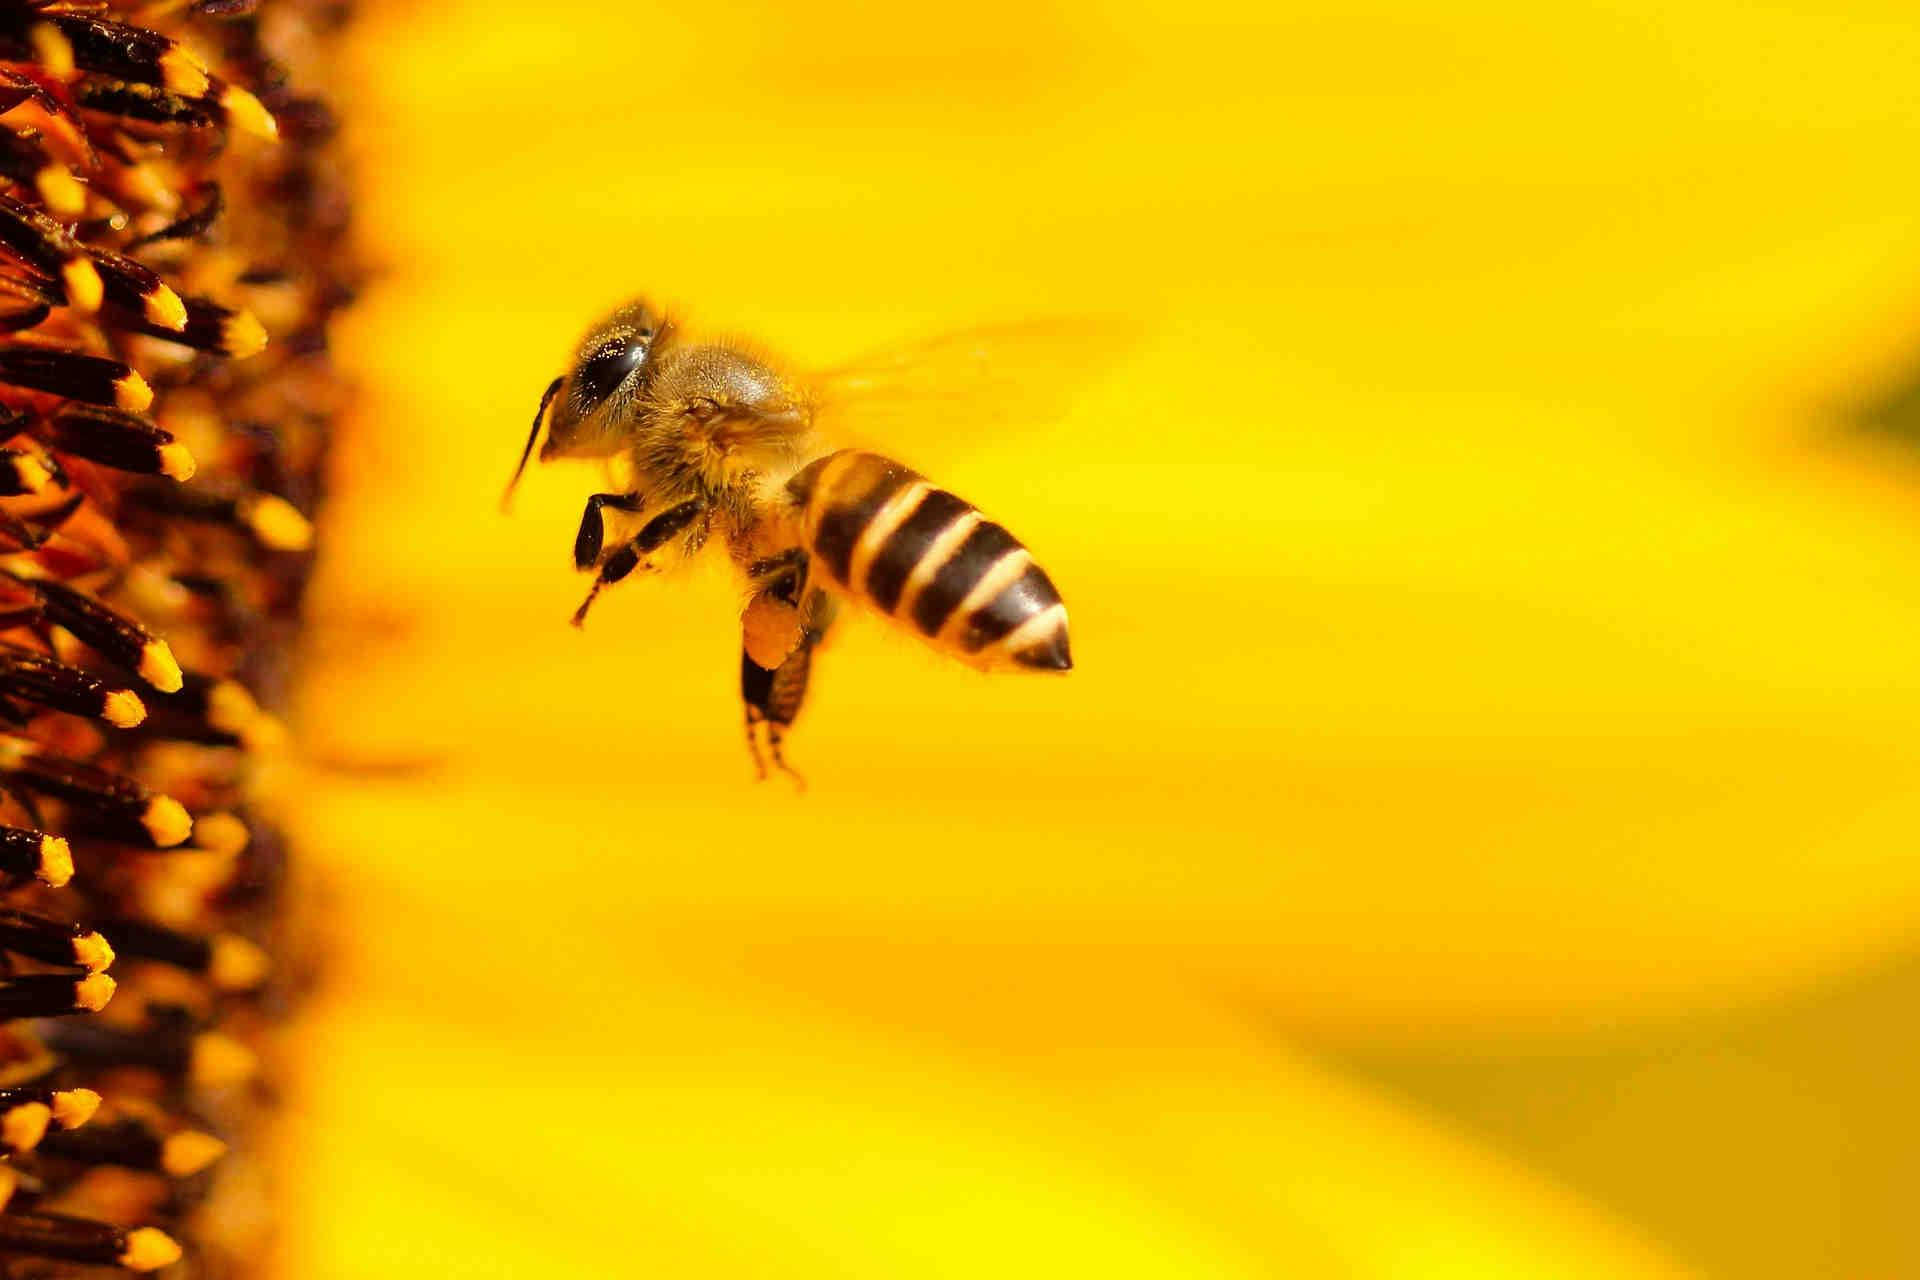 Le api e le conseguenze della perdita di biodiversità